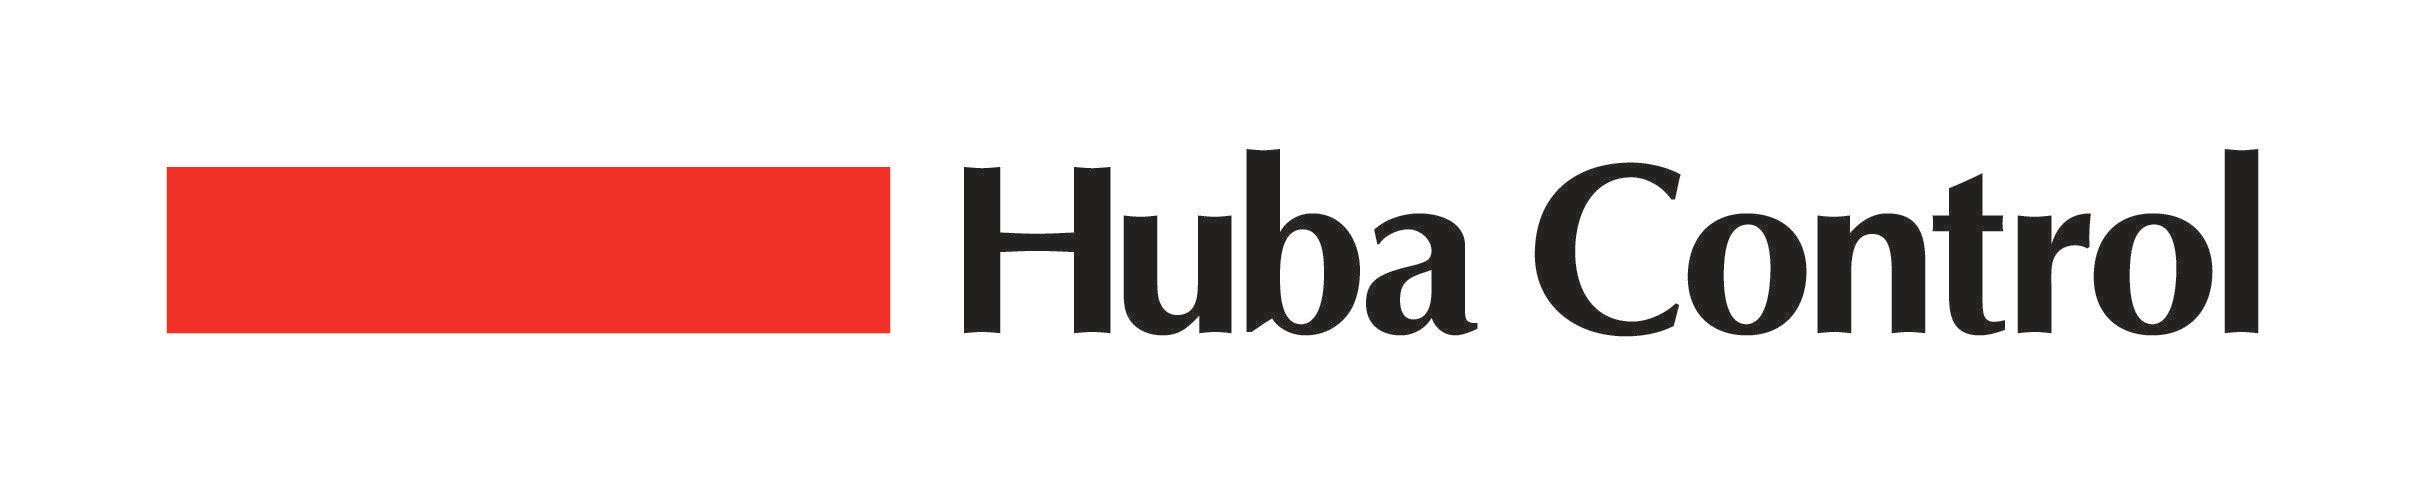 Control Logo - Huba Control Logo